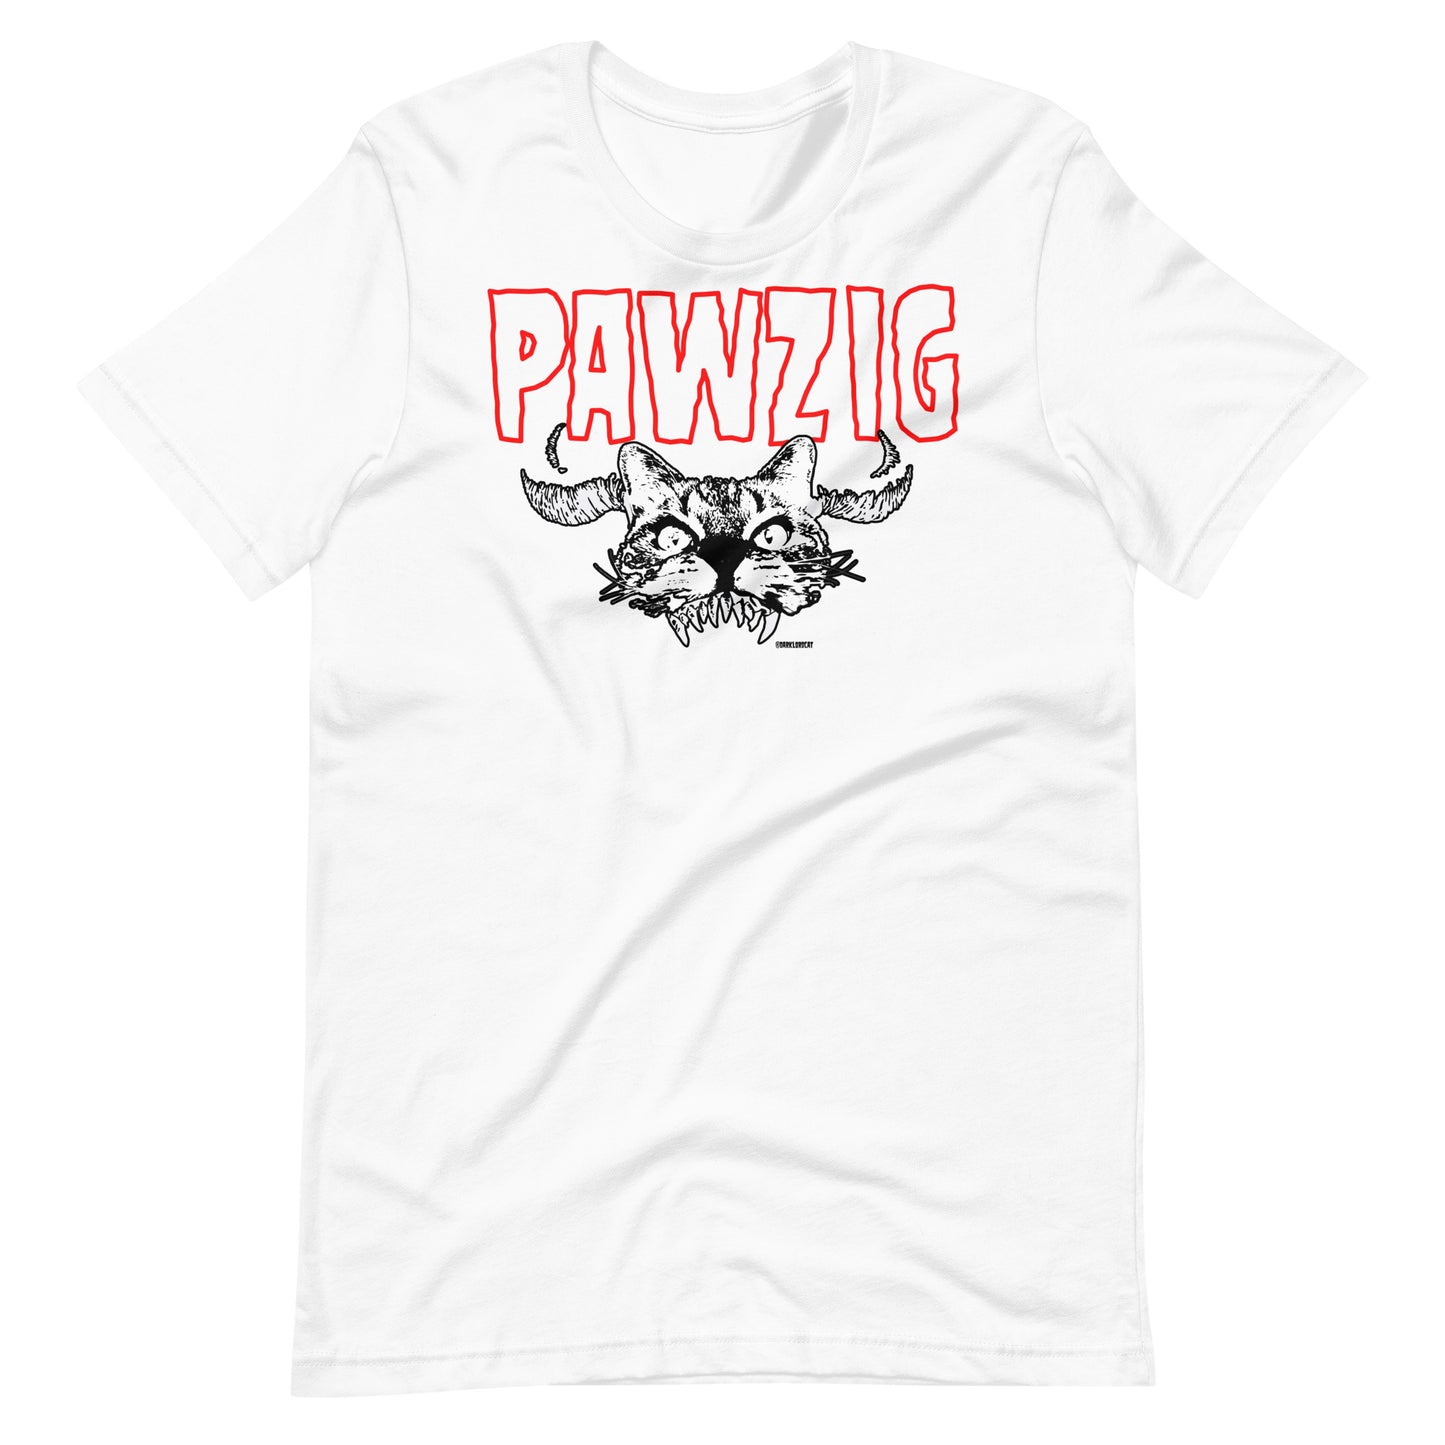 Pawzig Unisex T-Shirt